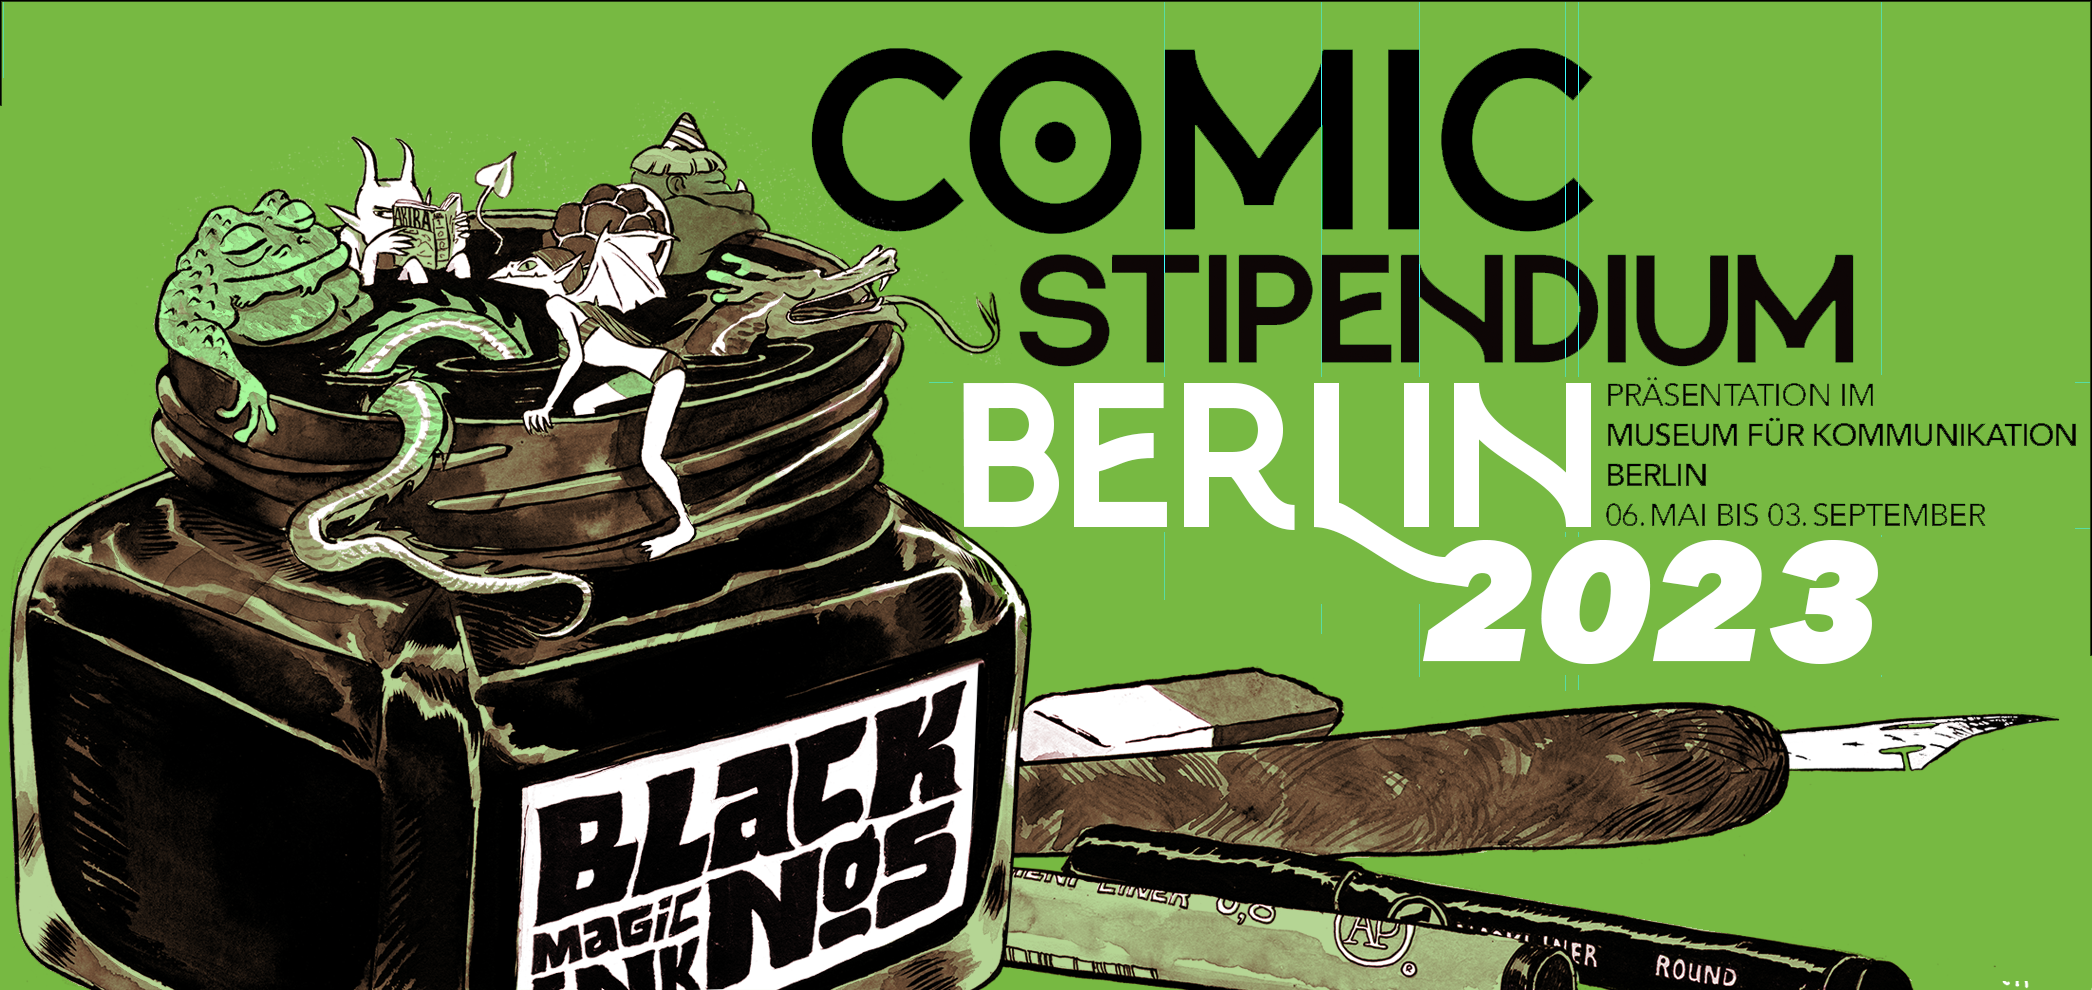 Banner für das Comic Stipendium Berlin 2023, Ausstellung im Museum für Kommunikation Berlin